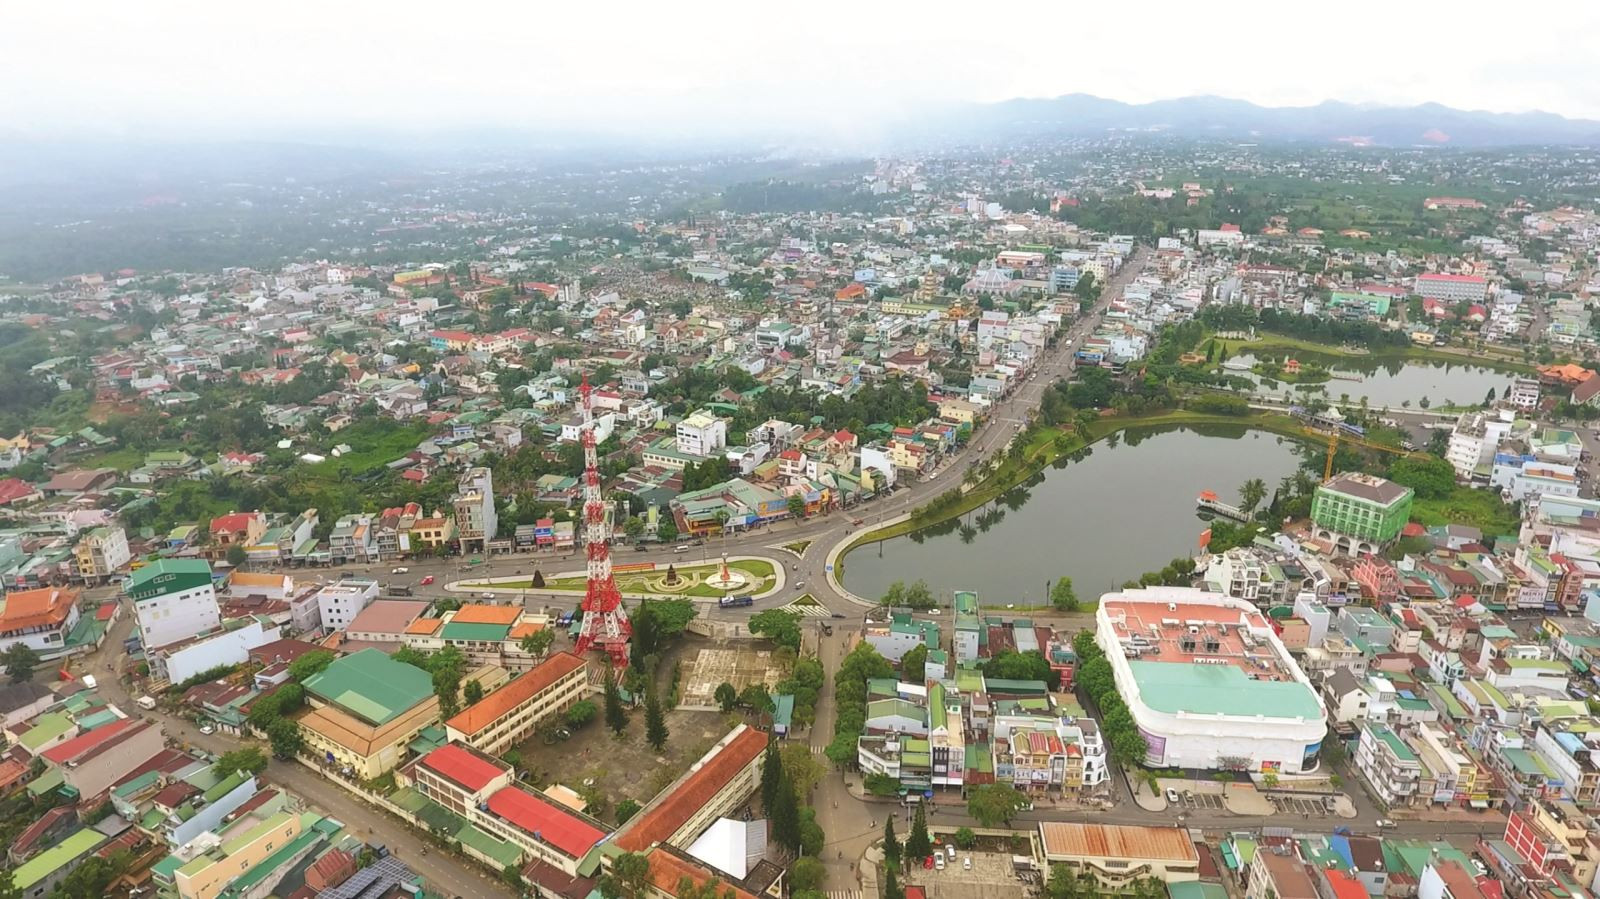 Thành phố Bảo Lộc hiện có diện tích hơn 233km, việc sáp nhập 5 xã sẽ nâng diện tích thành phố lên gần 600km2, tăng thêm 365km2; gấp 2,56 lần hiện tại